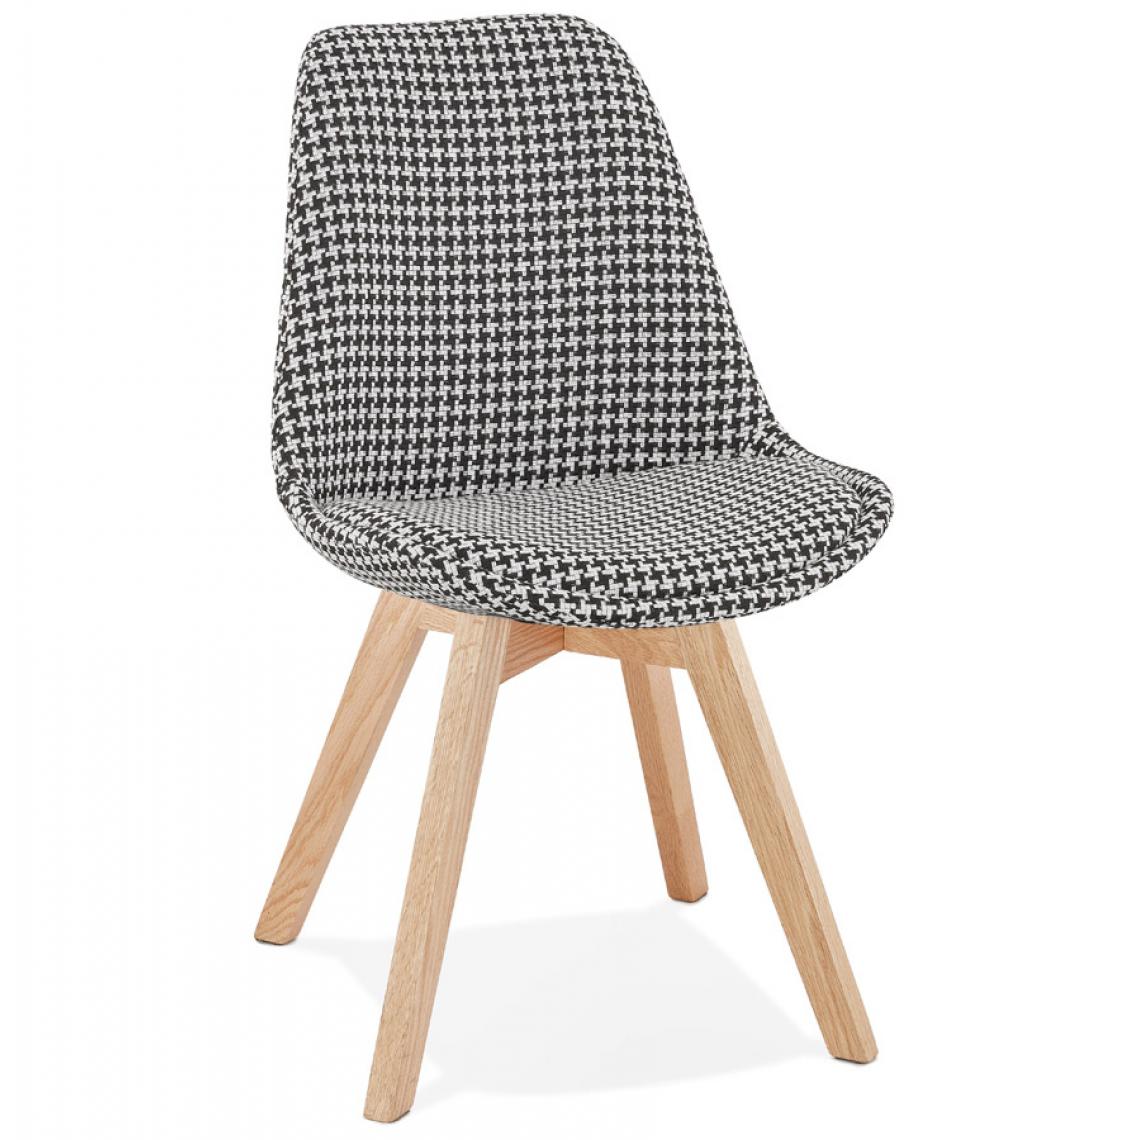 Alterego - Chaise en tissu pied de poule 'JOE' avec structure en bois naturel - Chaises